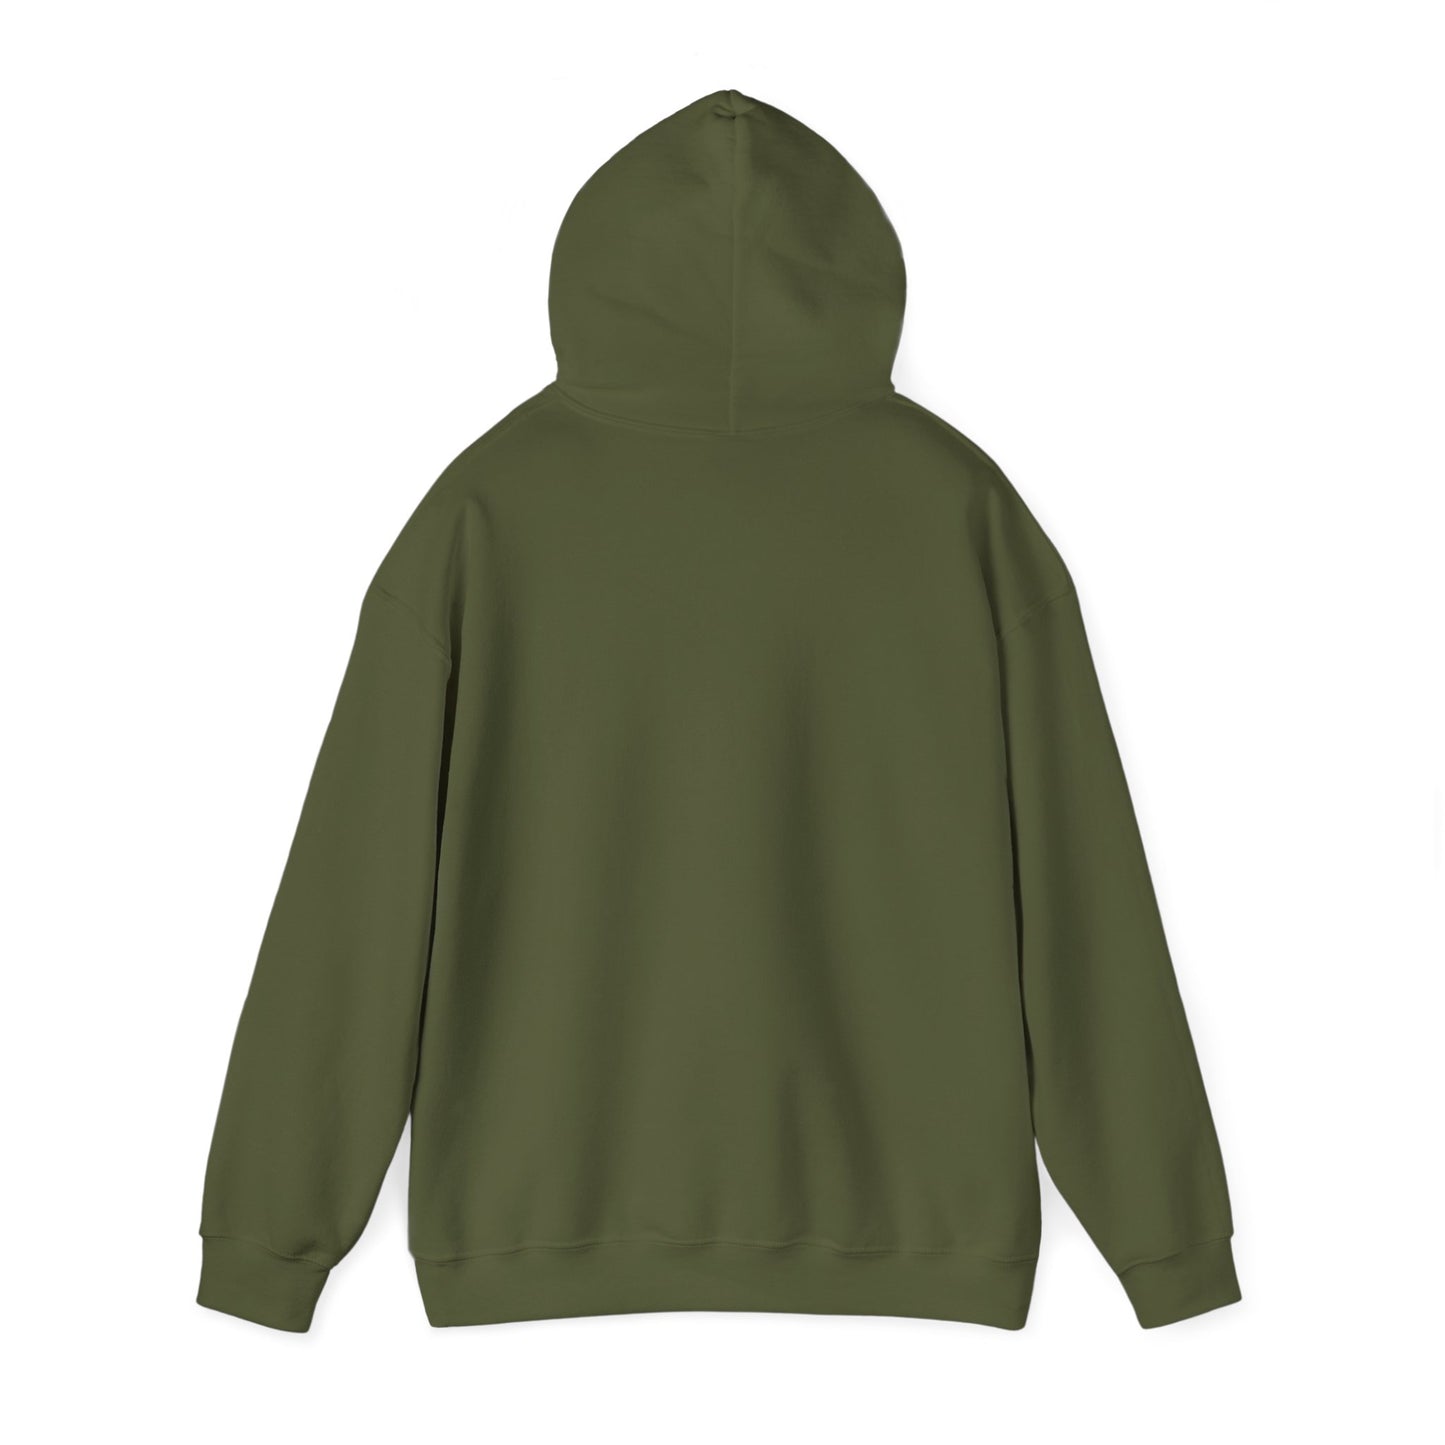 No Rock Like God Unisex Heavy Blend™ Hooded Sweatshirt